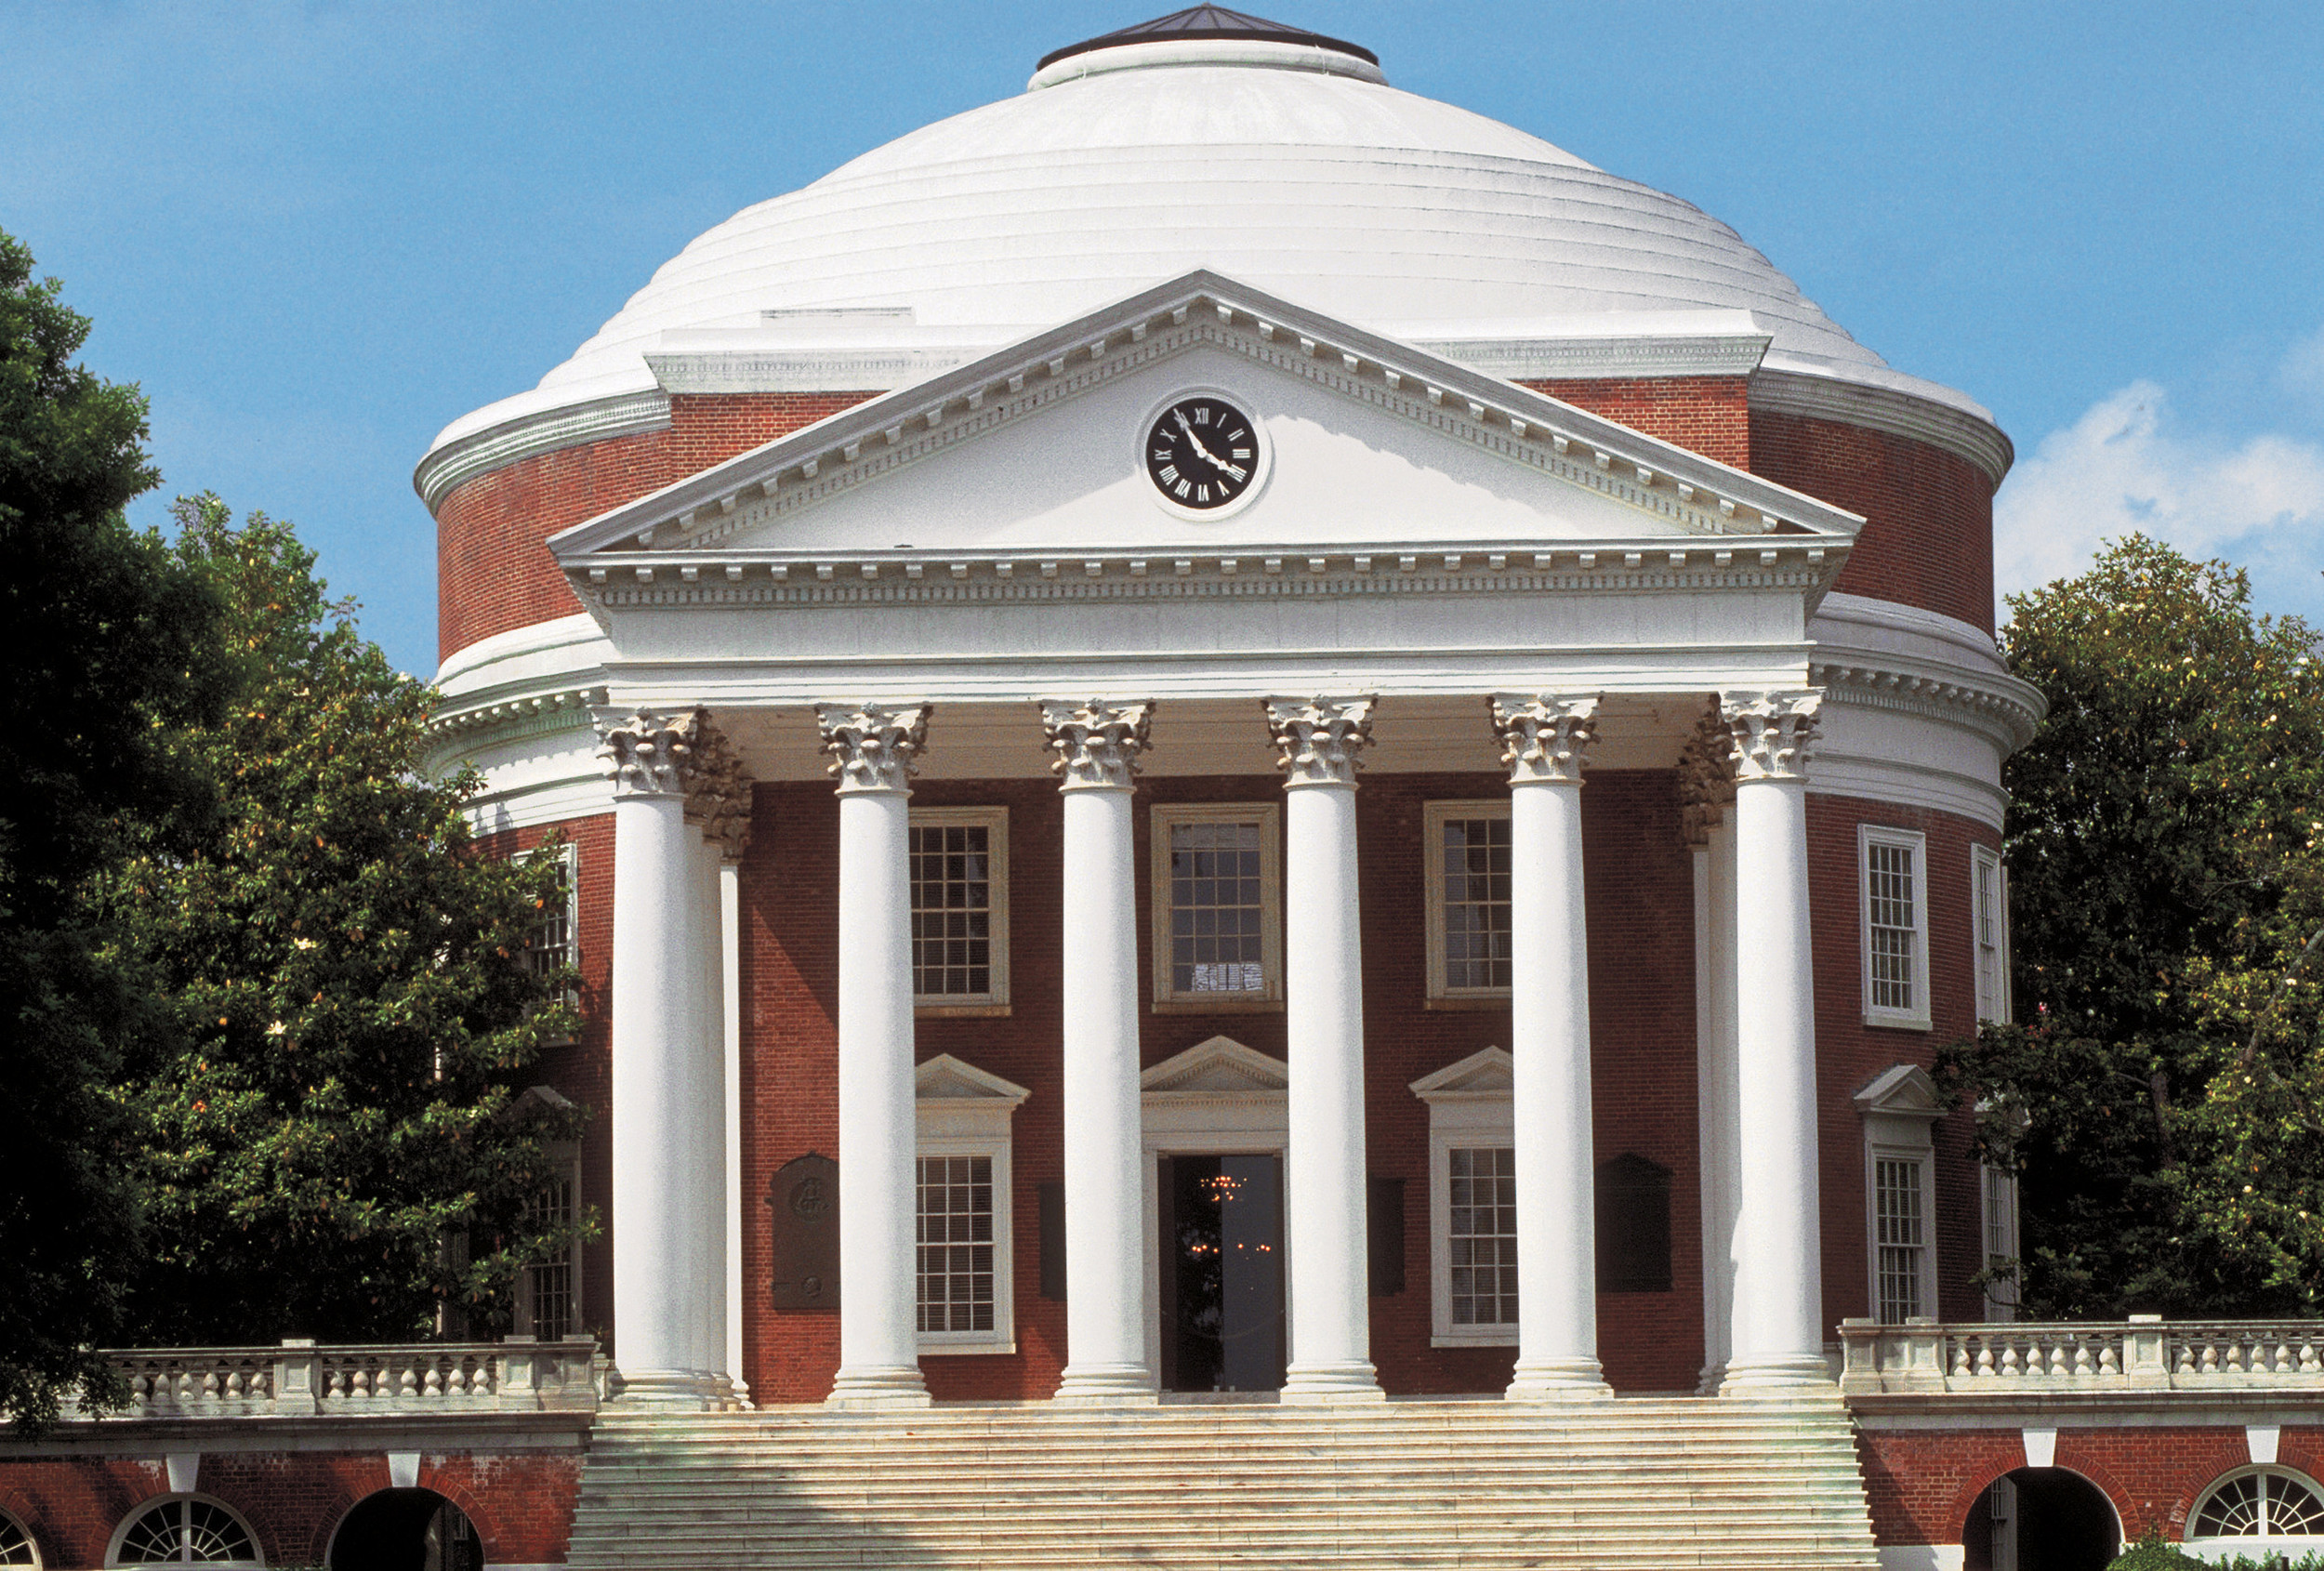 UVA Rotunda University of Virginia Charlottesville Postcard Thomas Jefferson 